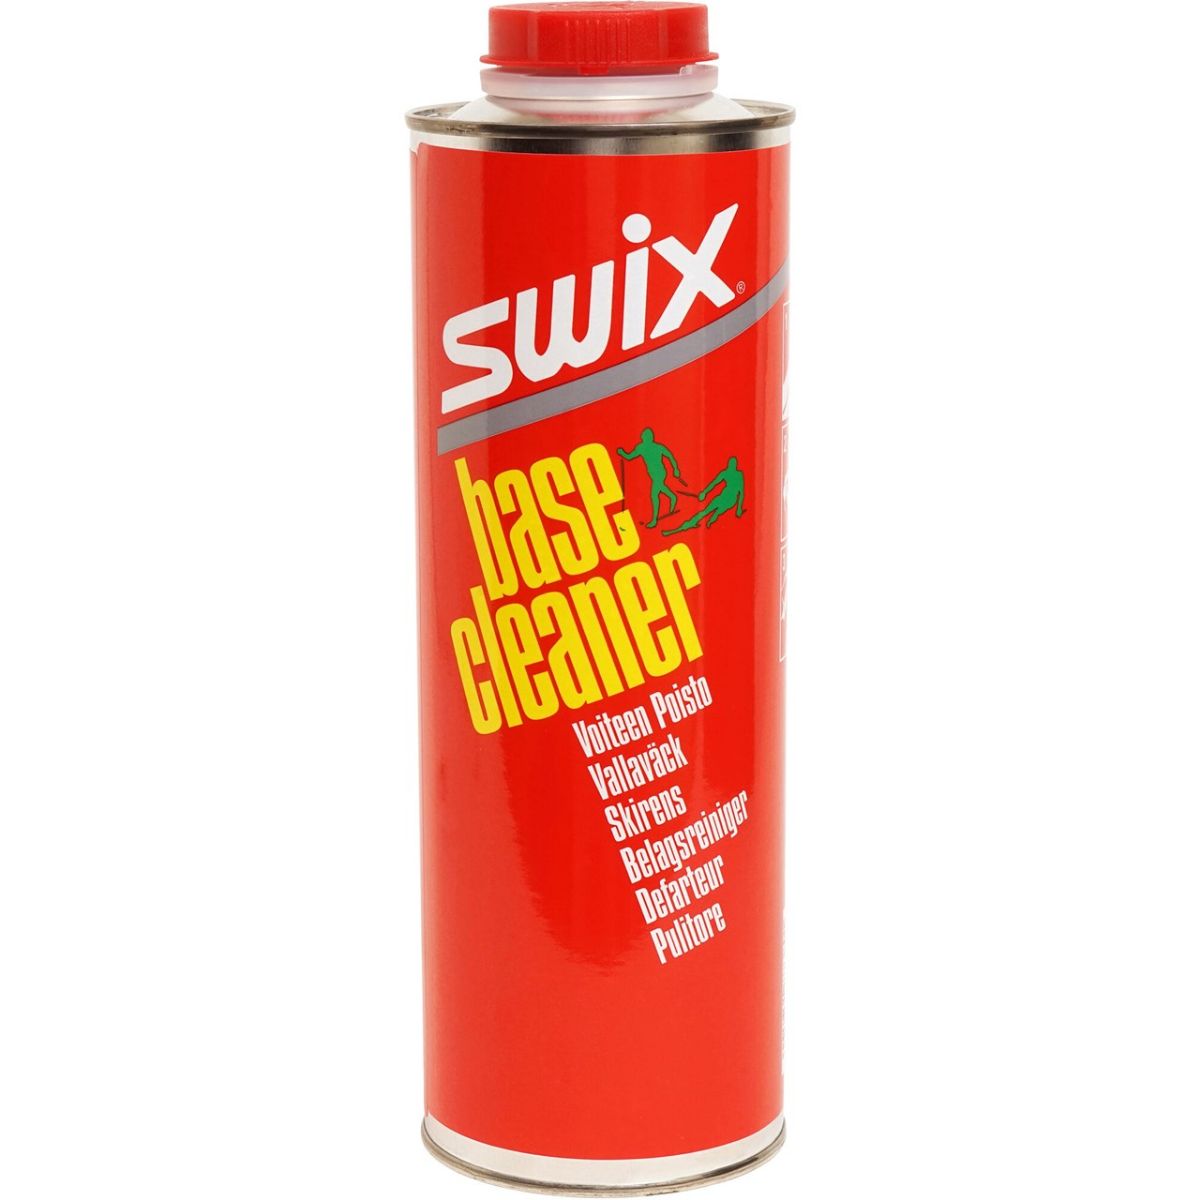 swix-base-cleaner-1L